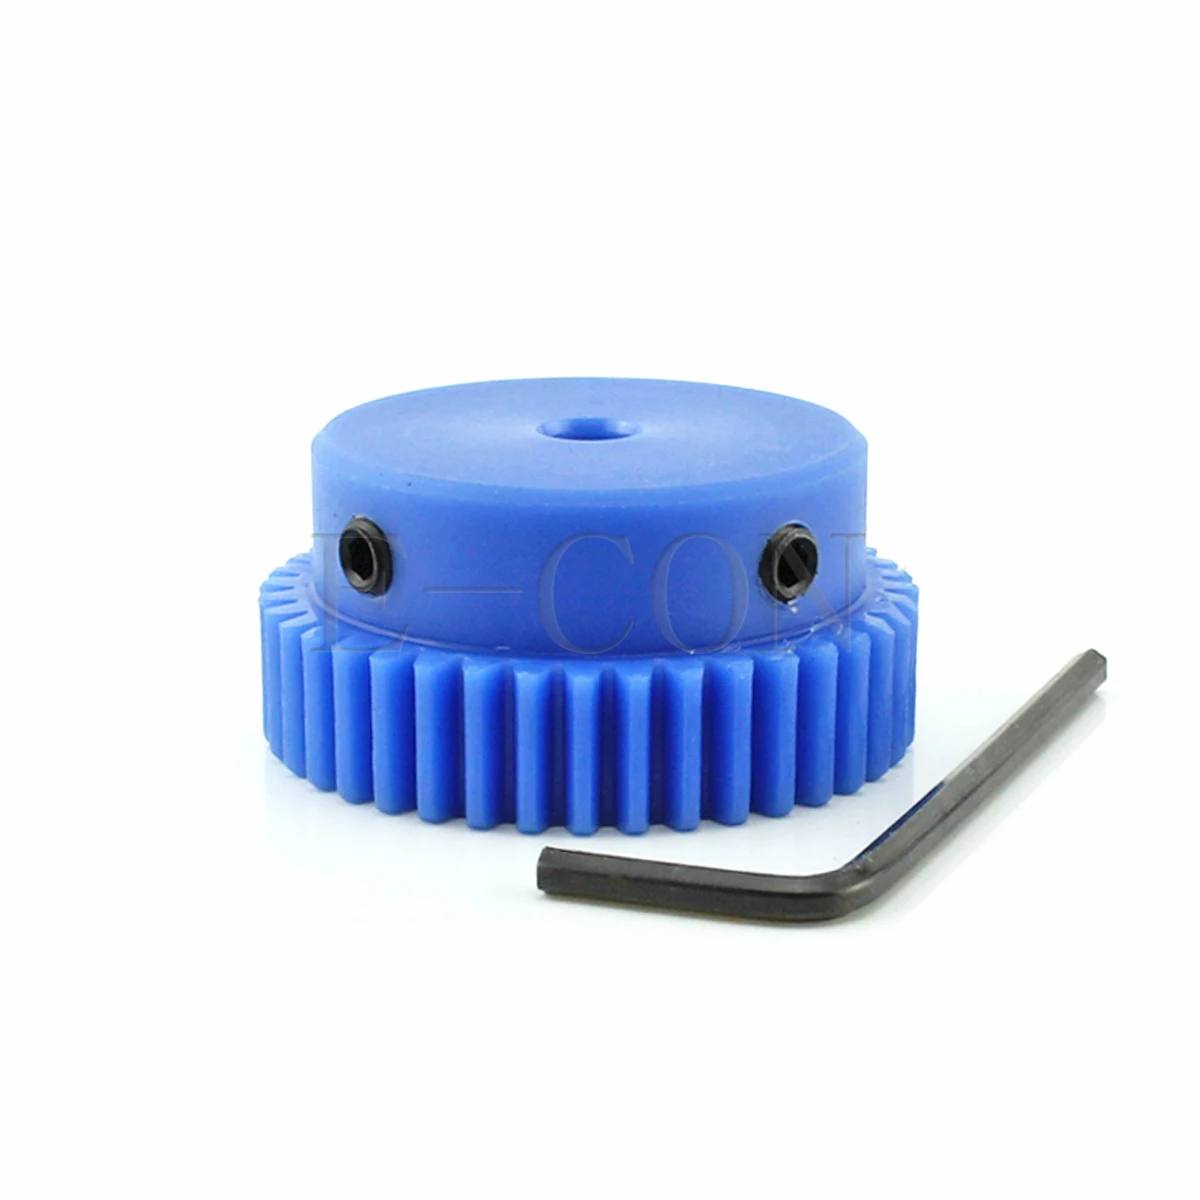 1pcs 1 модул син найлон шпора предавка 1M-40T 40 зъби отвор 6-17mm зъби ширина 10 мм мотор найлон зъбно колело със стъпки